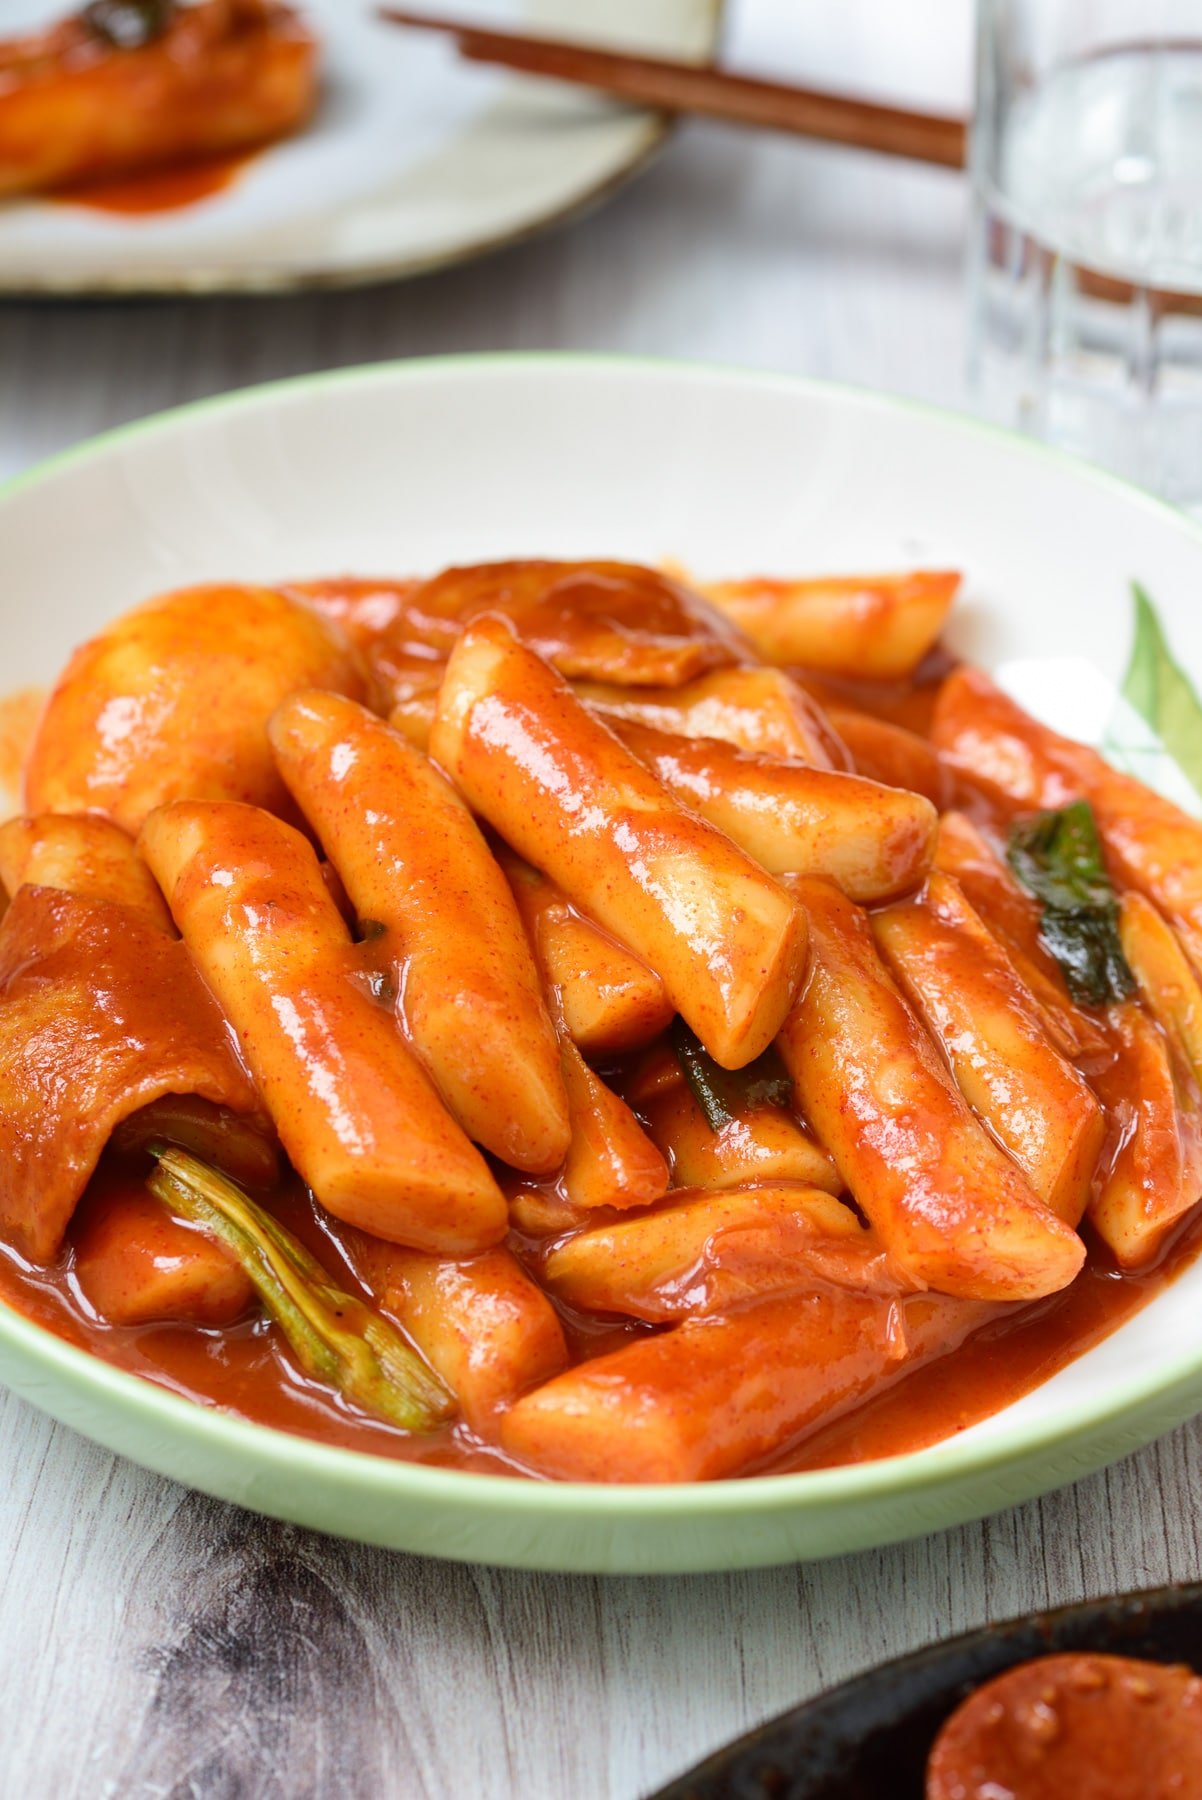 Tteokbokki (Spicy Stir-fried Rice Cakes) - Korean Bapsang